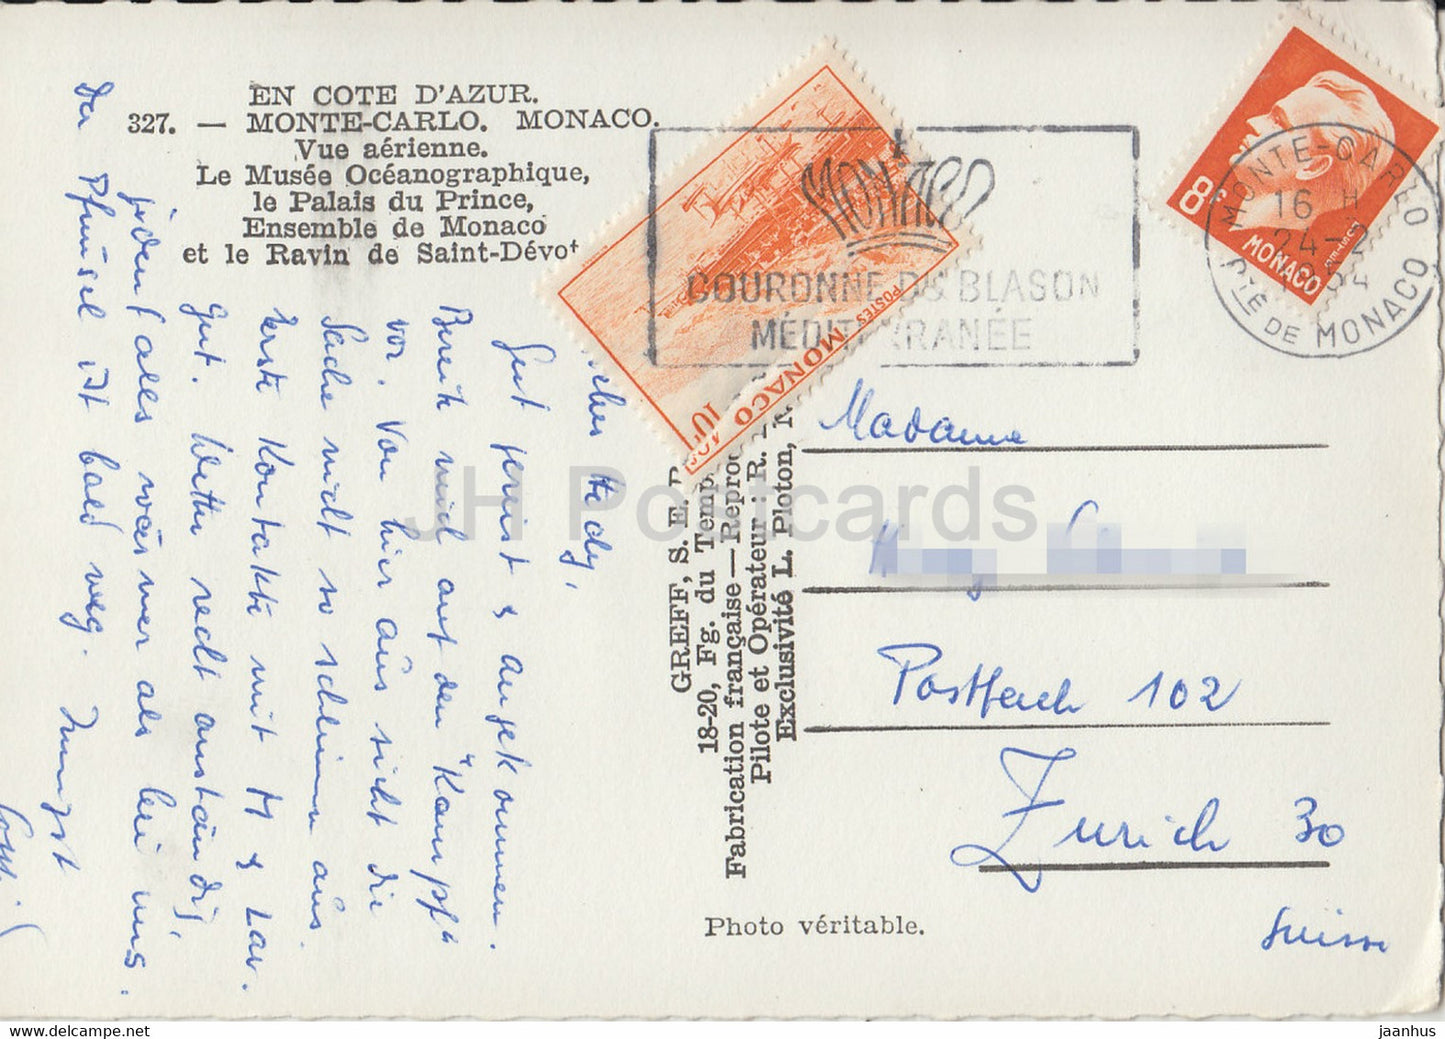 Monte Carlo - Vue Aérienne - Le Musée Ovéanographique - Le Palais du Prince - 327 - carte postale ancienne - 1954 - Monaco - occasion